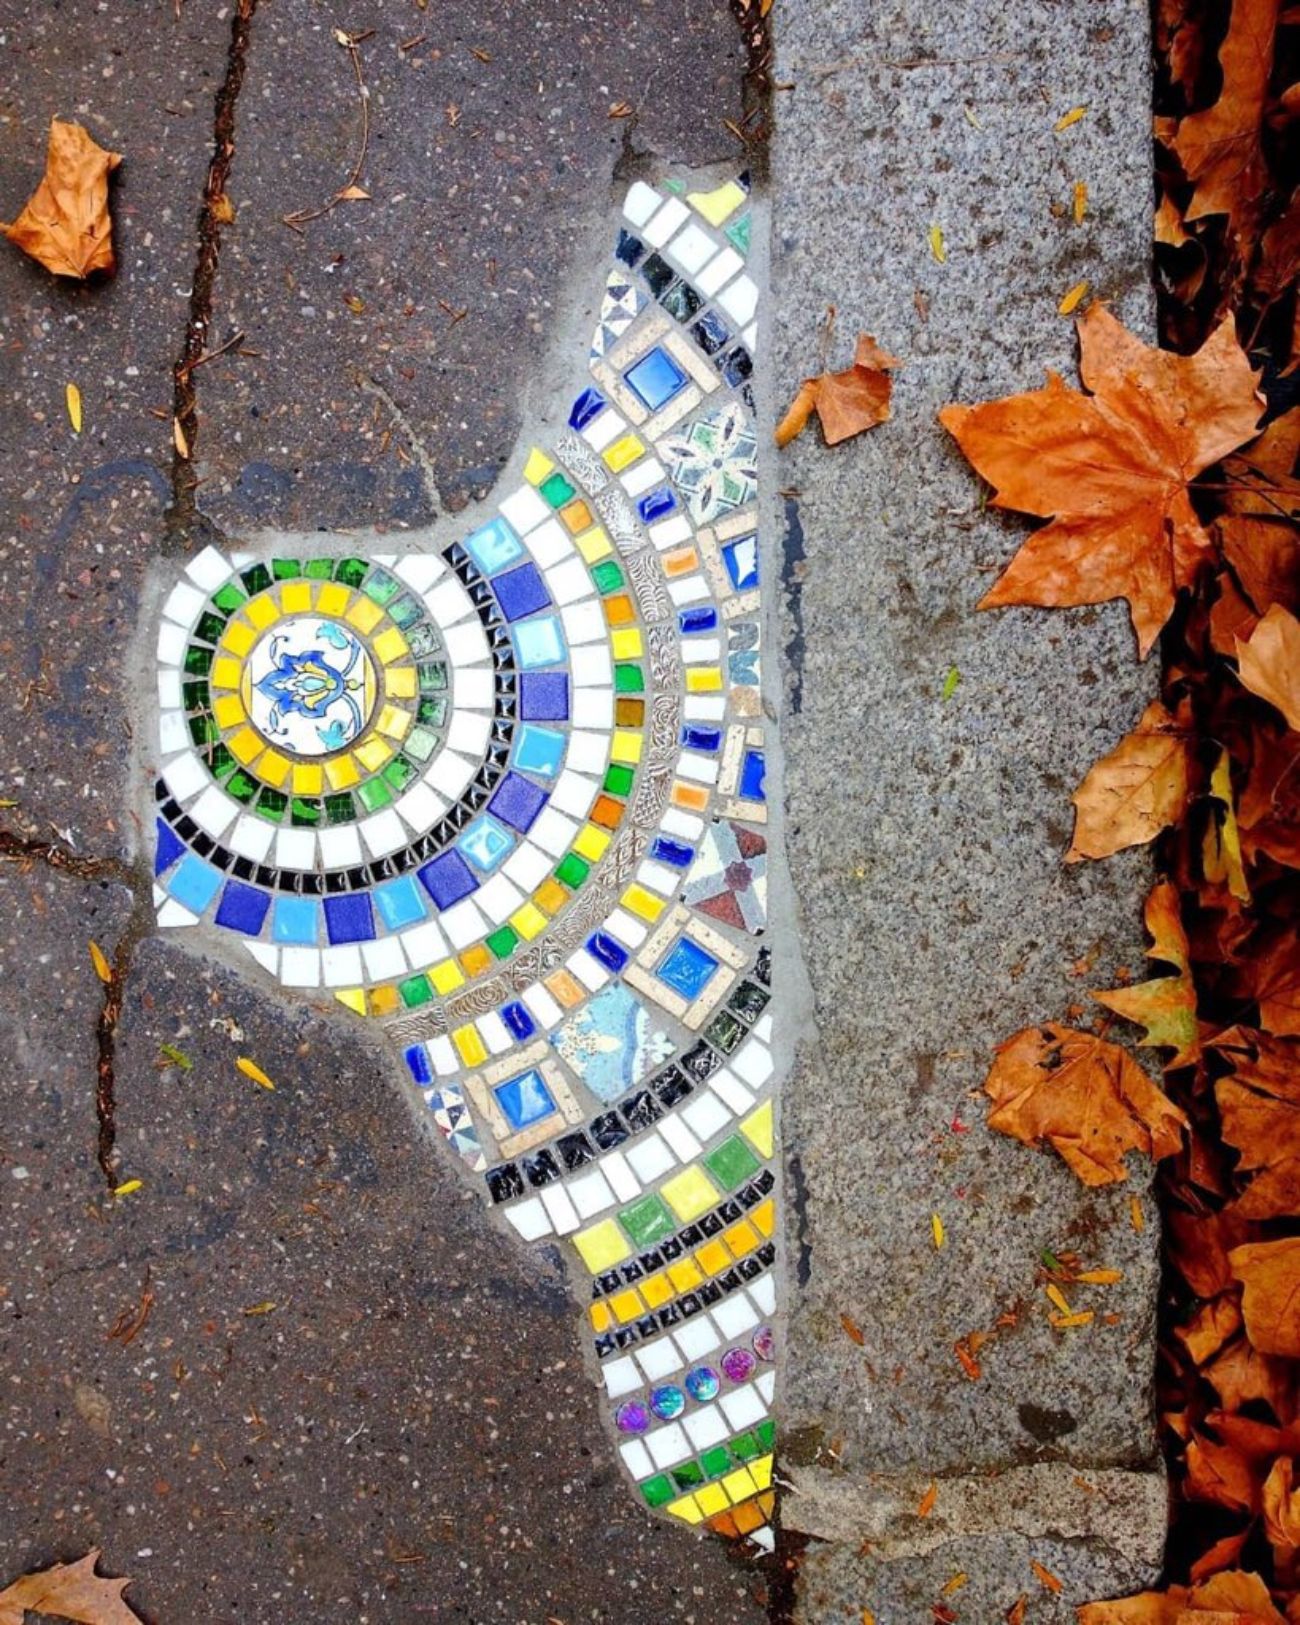 Ememem, el artista callejero que da color a las calles rellenando grietas con mosaicos